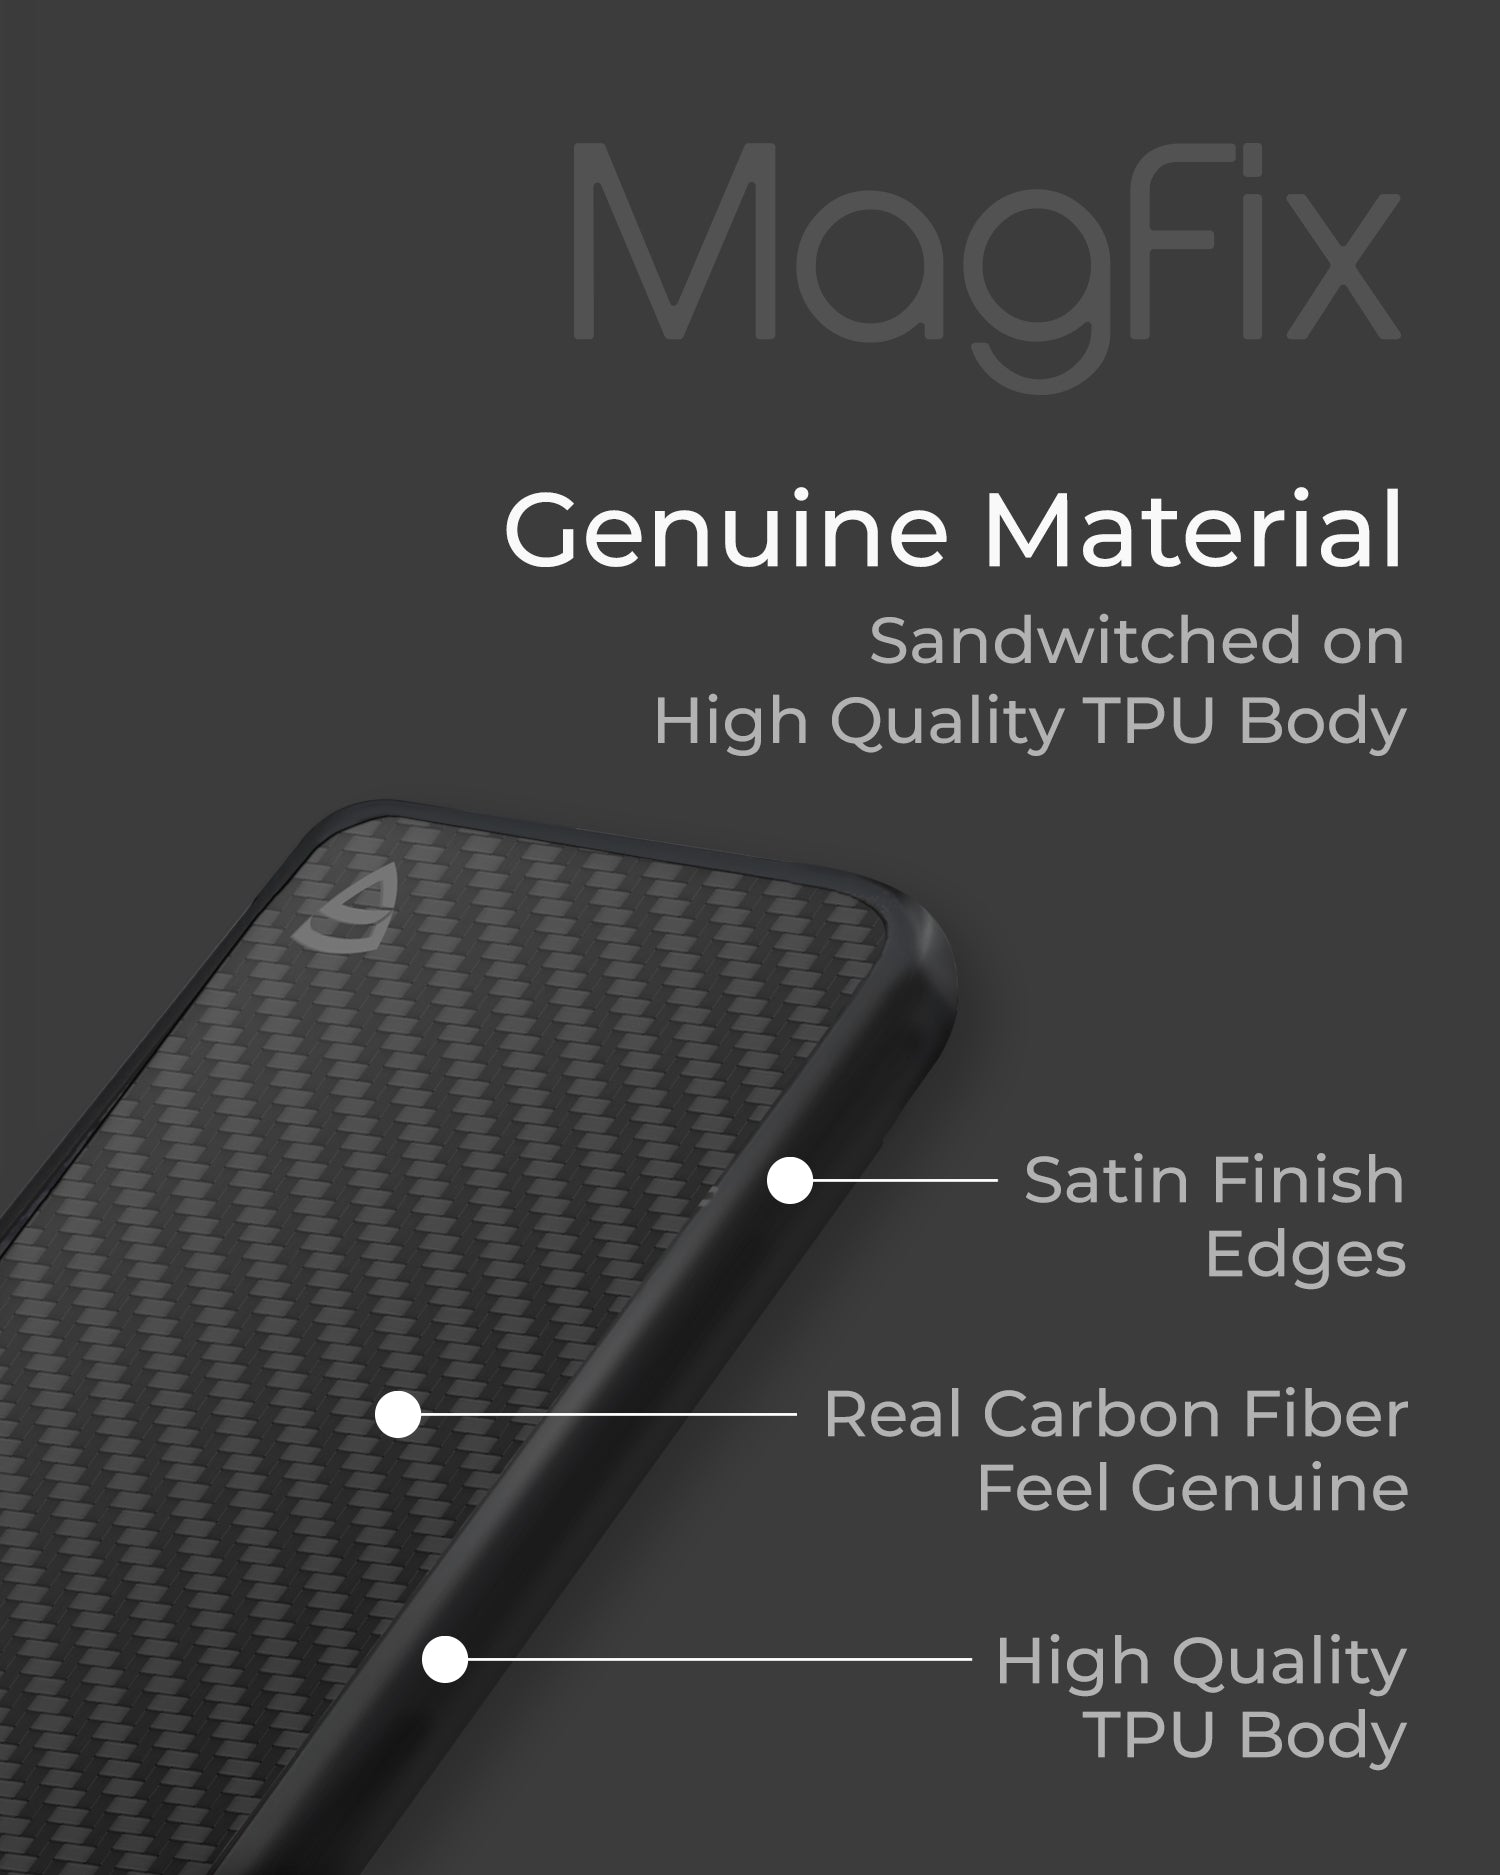 RAEGR MagFix Elements Armor for iPhone 13 Mini - Carbon Fiber ( Black )